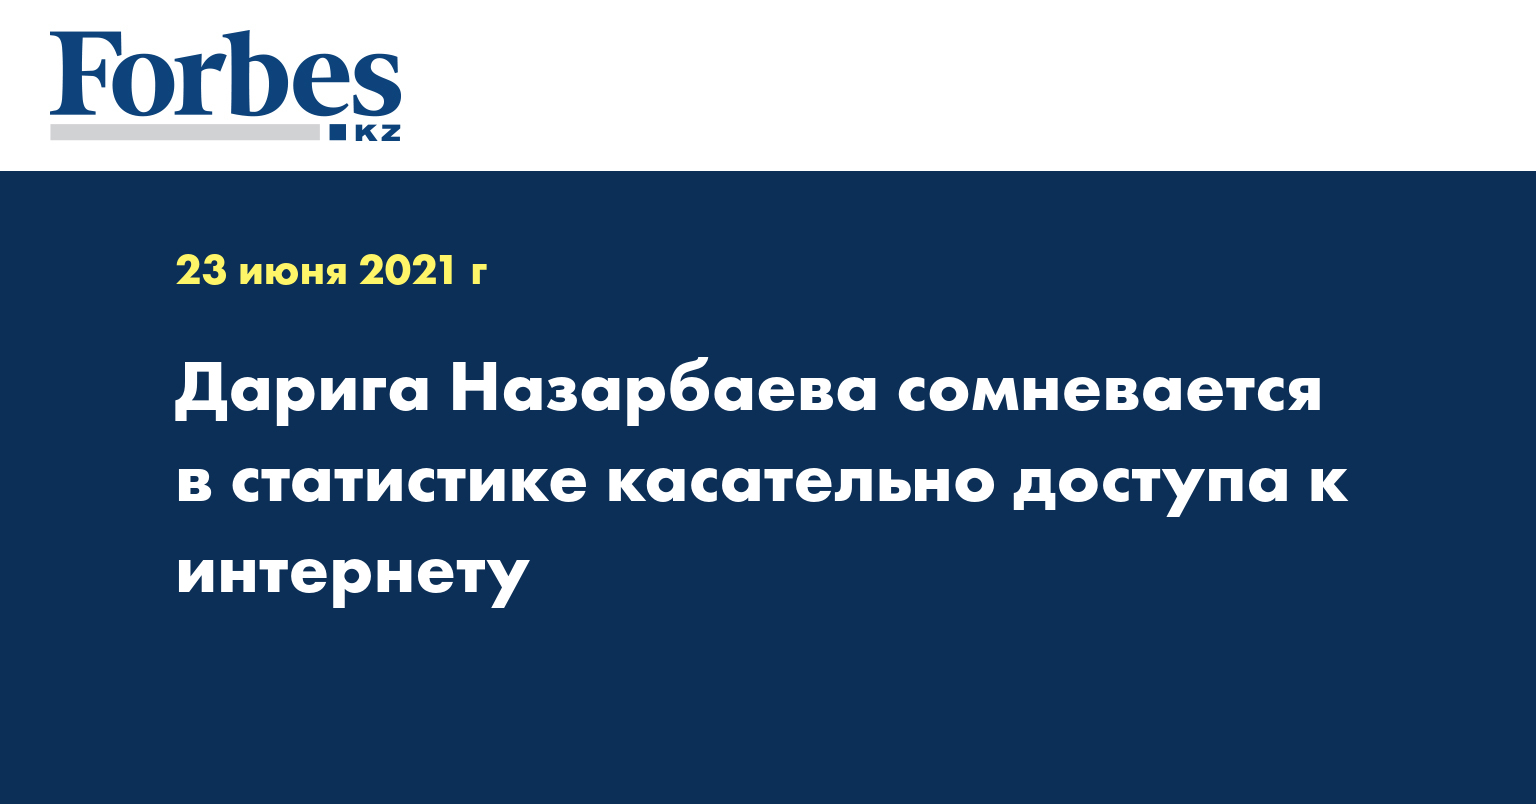 Дарига Назарбаева сомневается в статистике касательно доступа к интернету